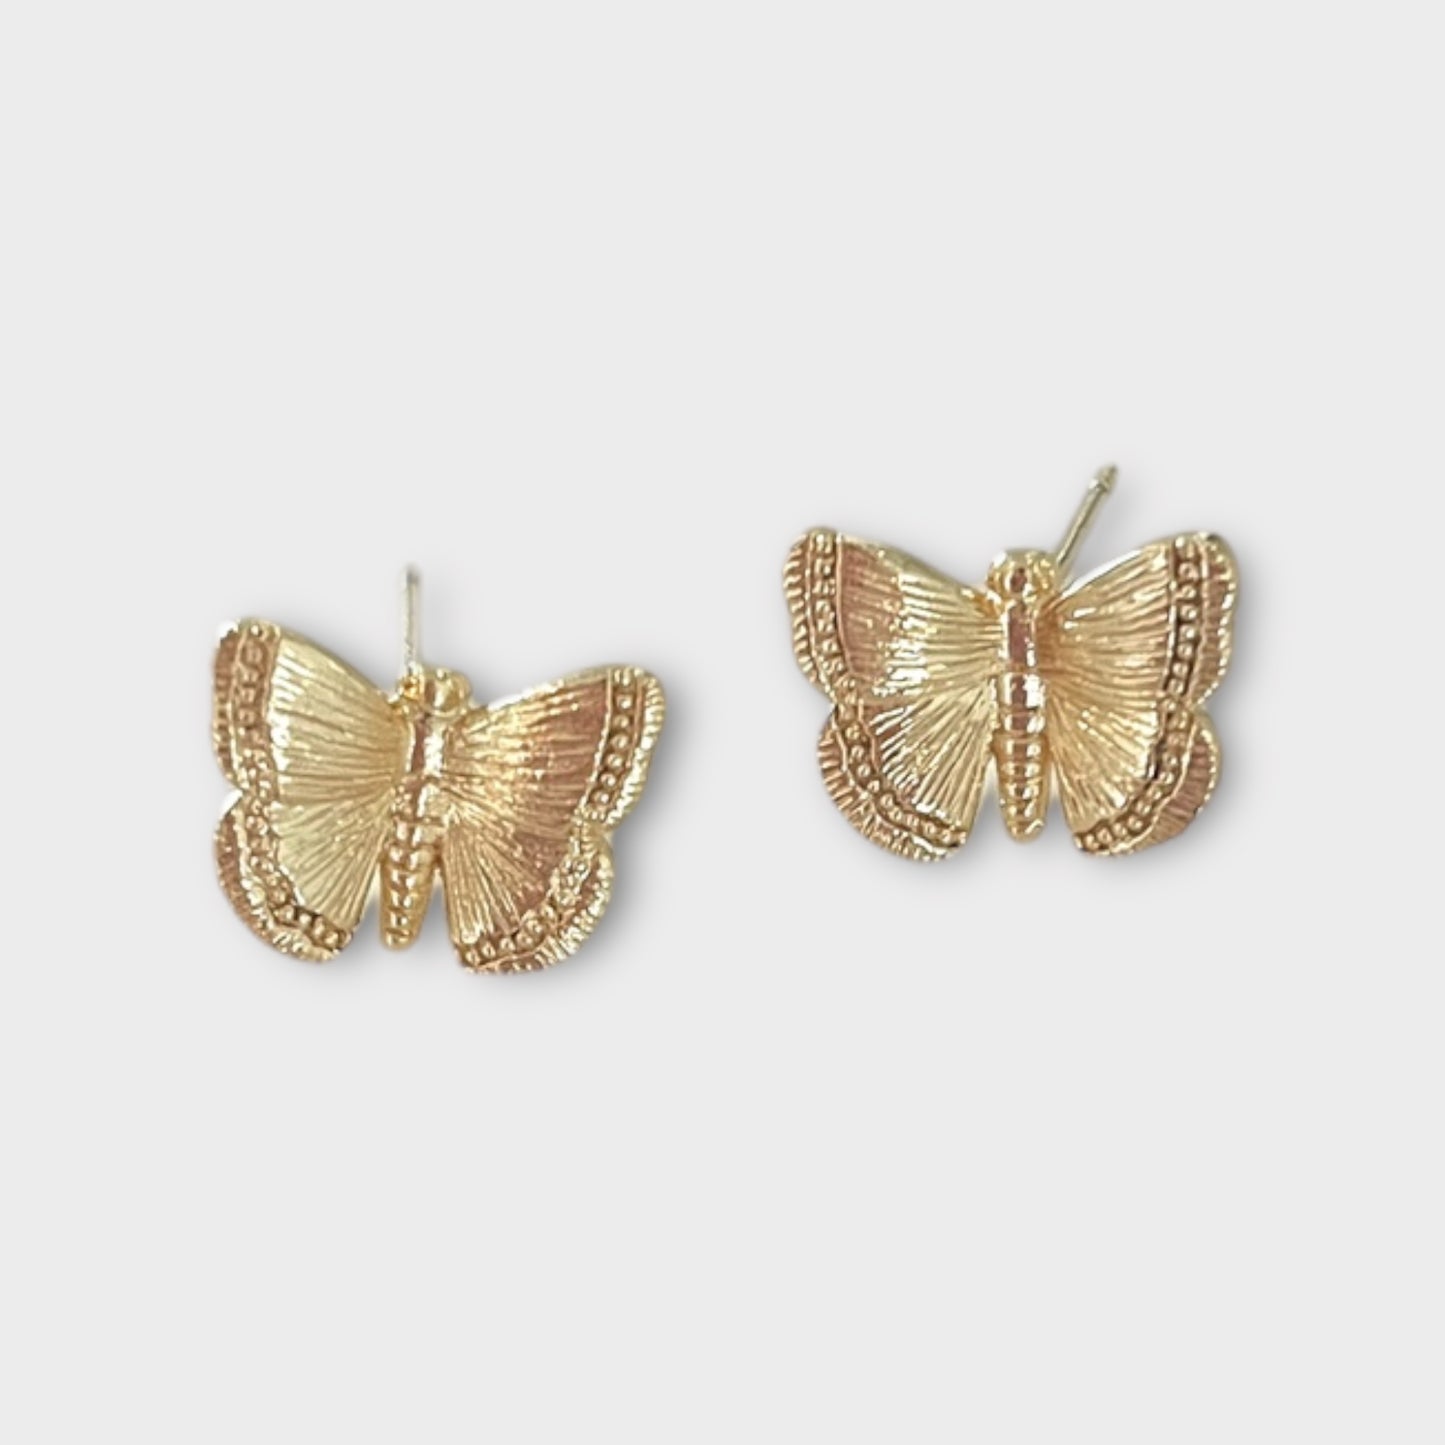 Dainty Butterfly Stud Earrings